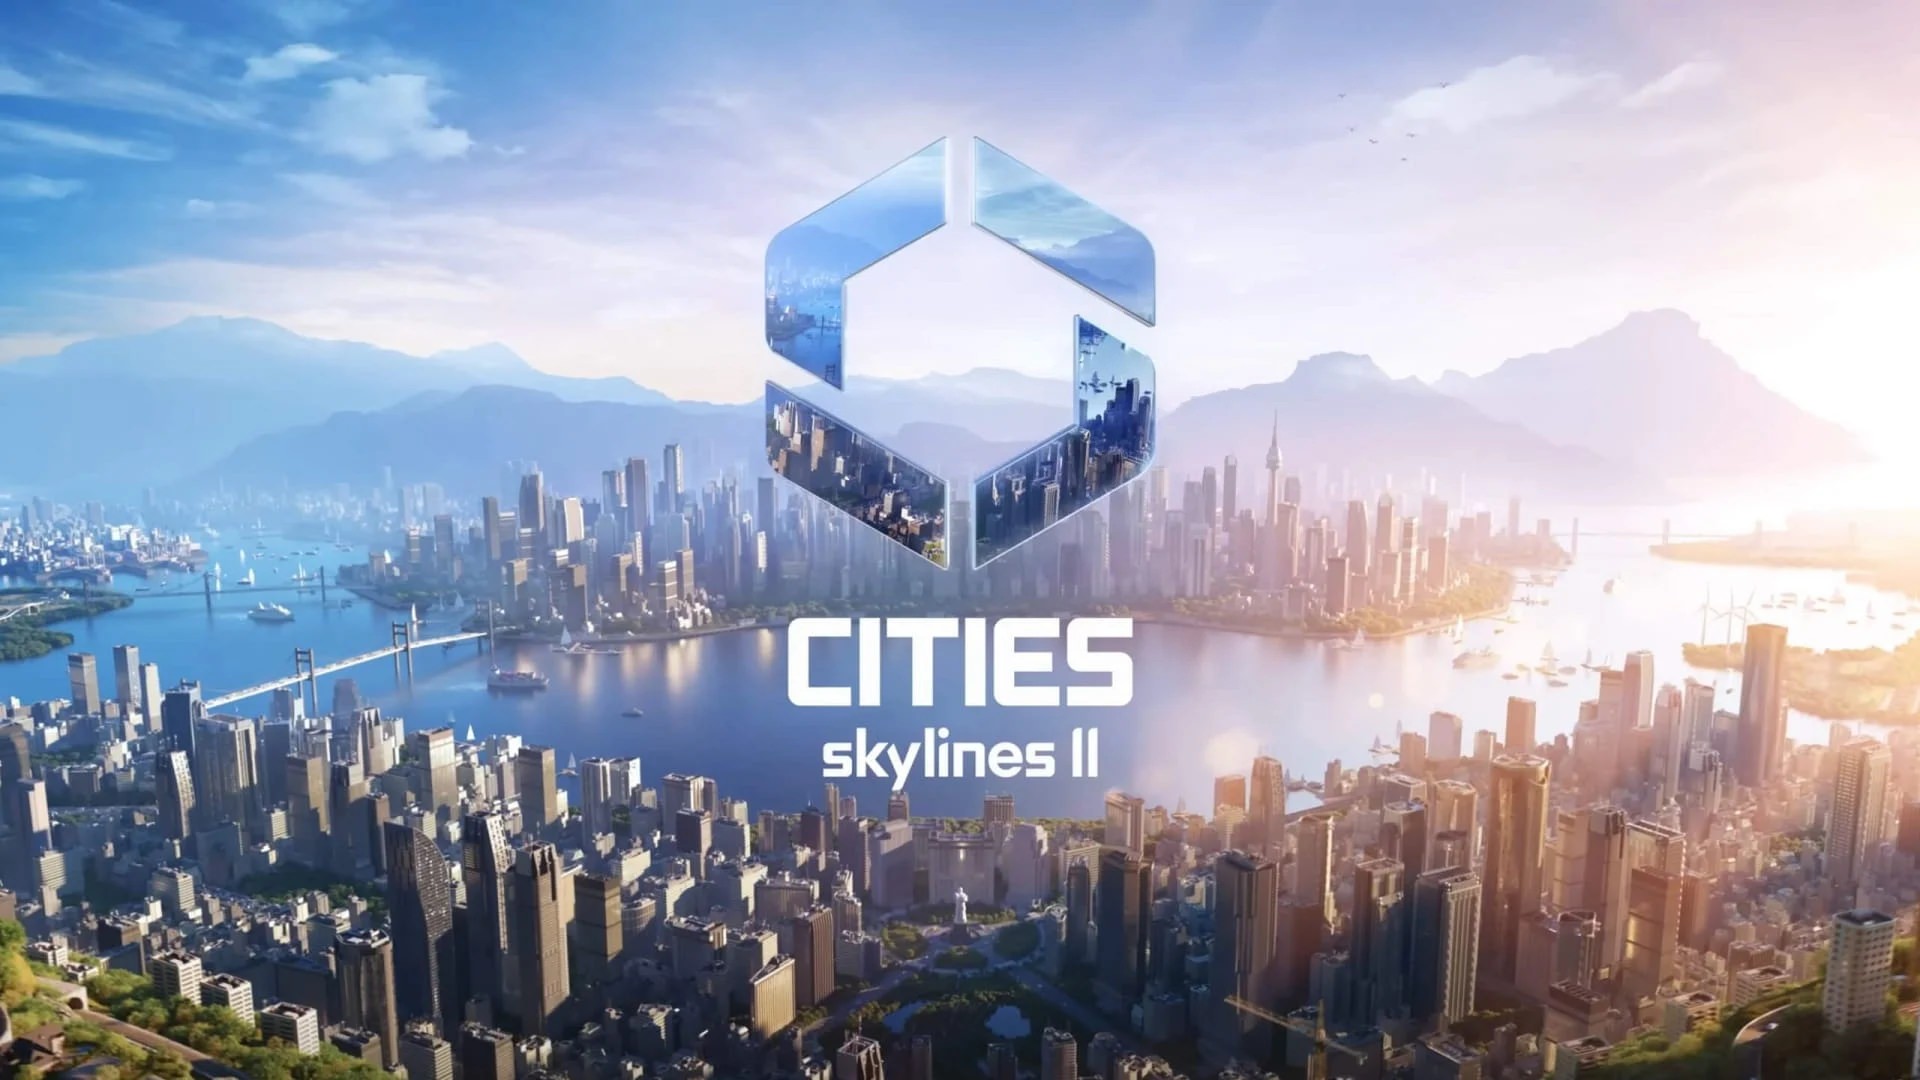 تاریخ انتشار نسخه کنسولی Cities: Skylines 2 به تعویق افتاد